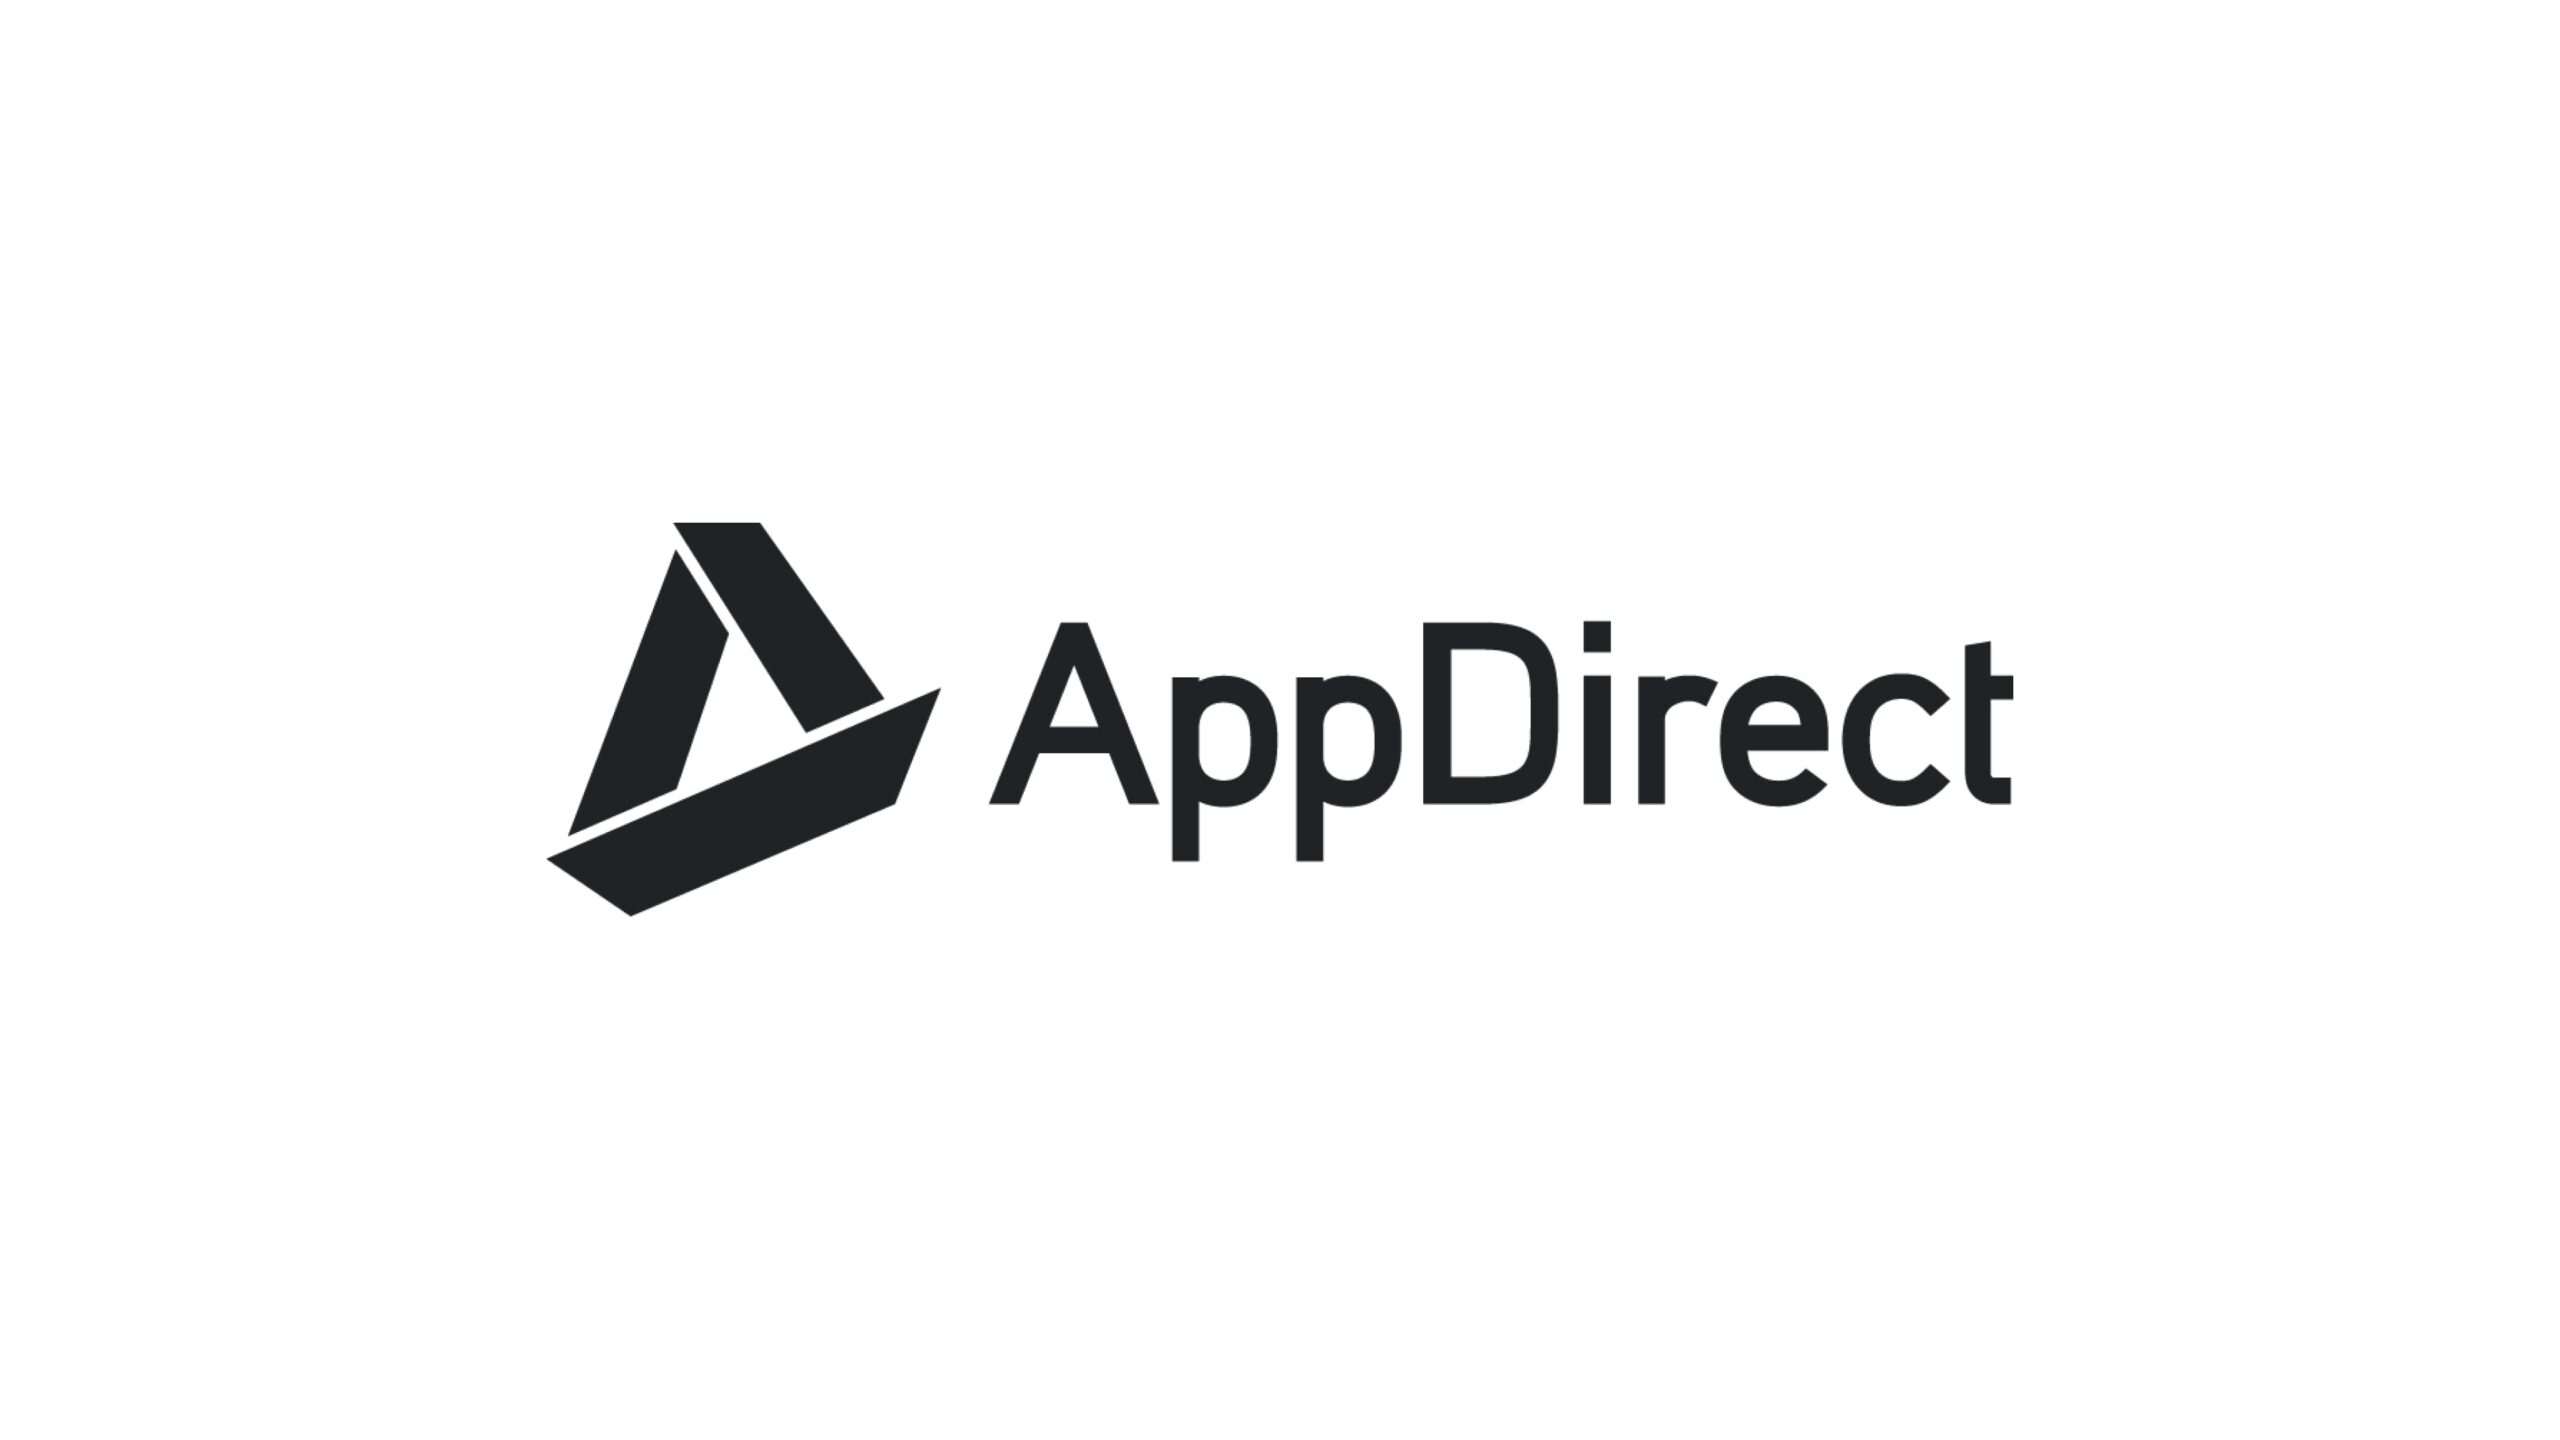 AppDirectが1億ドルを調達し、ハイテク企業向け融資プログラムを拡大